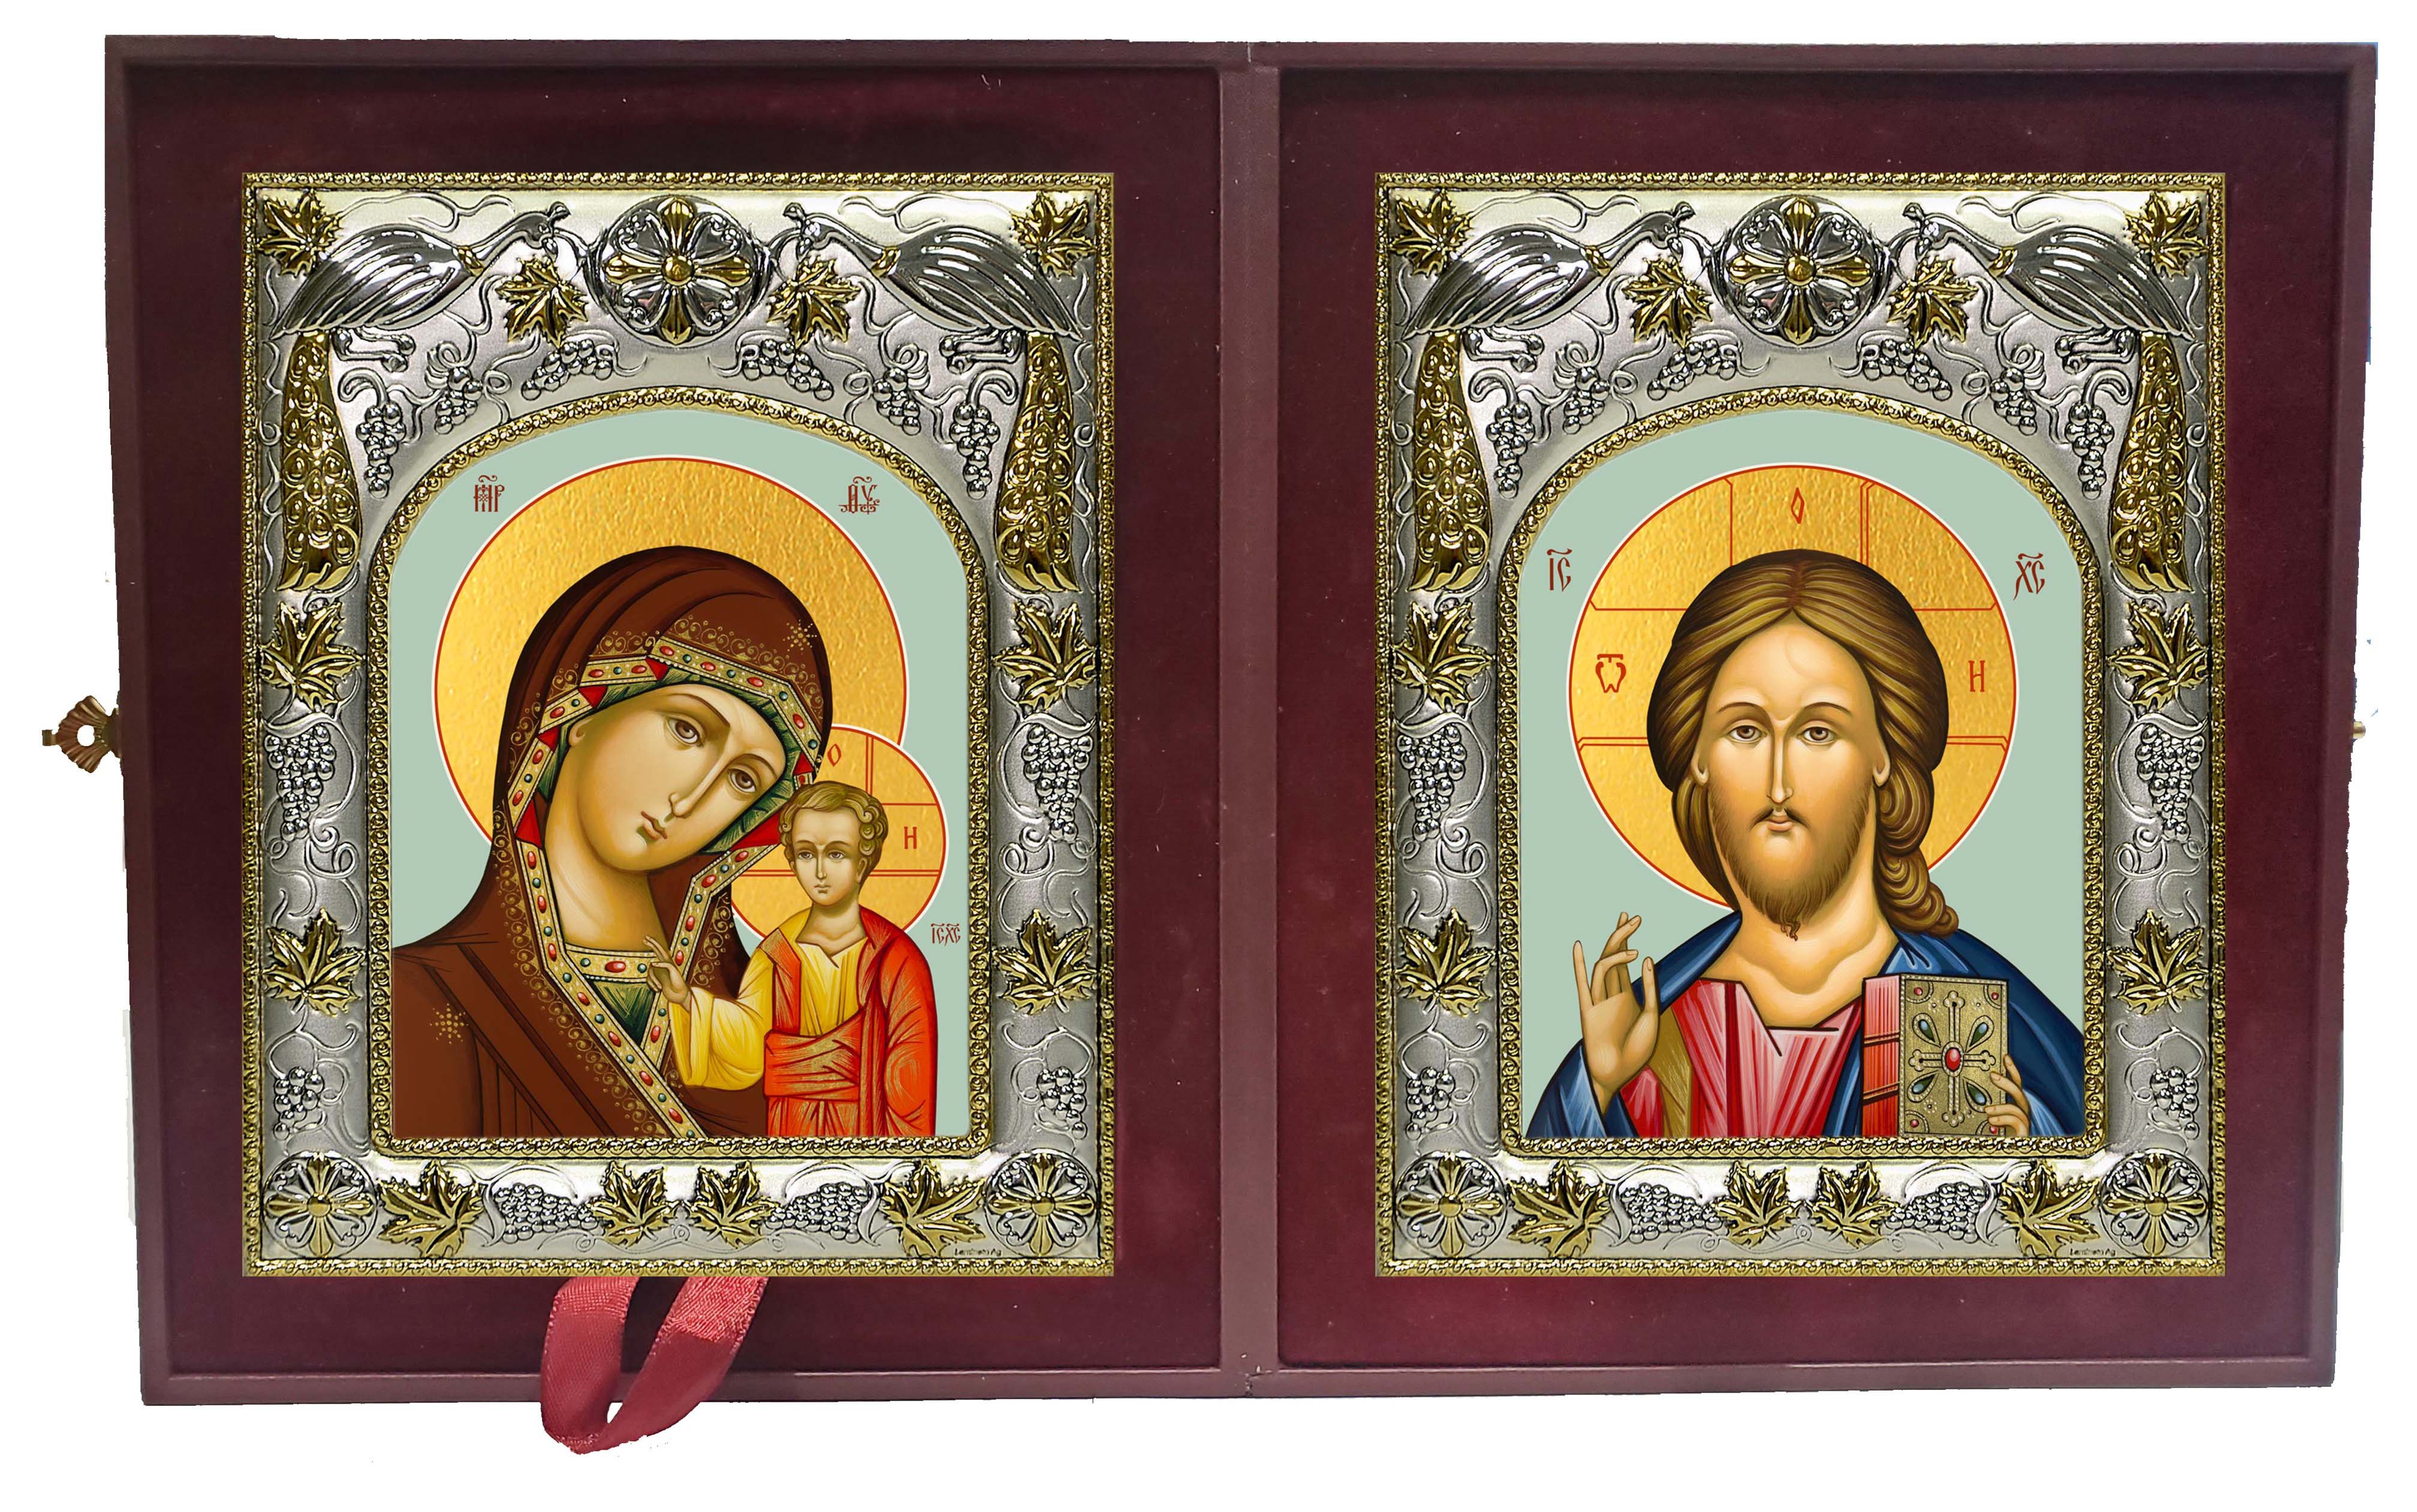 Купить икону в складне В православном интернет магазине